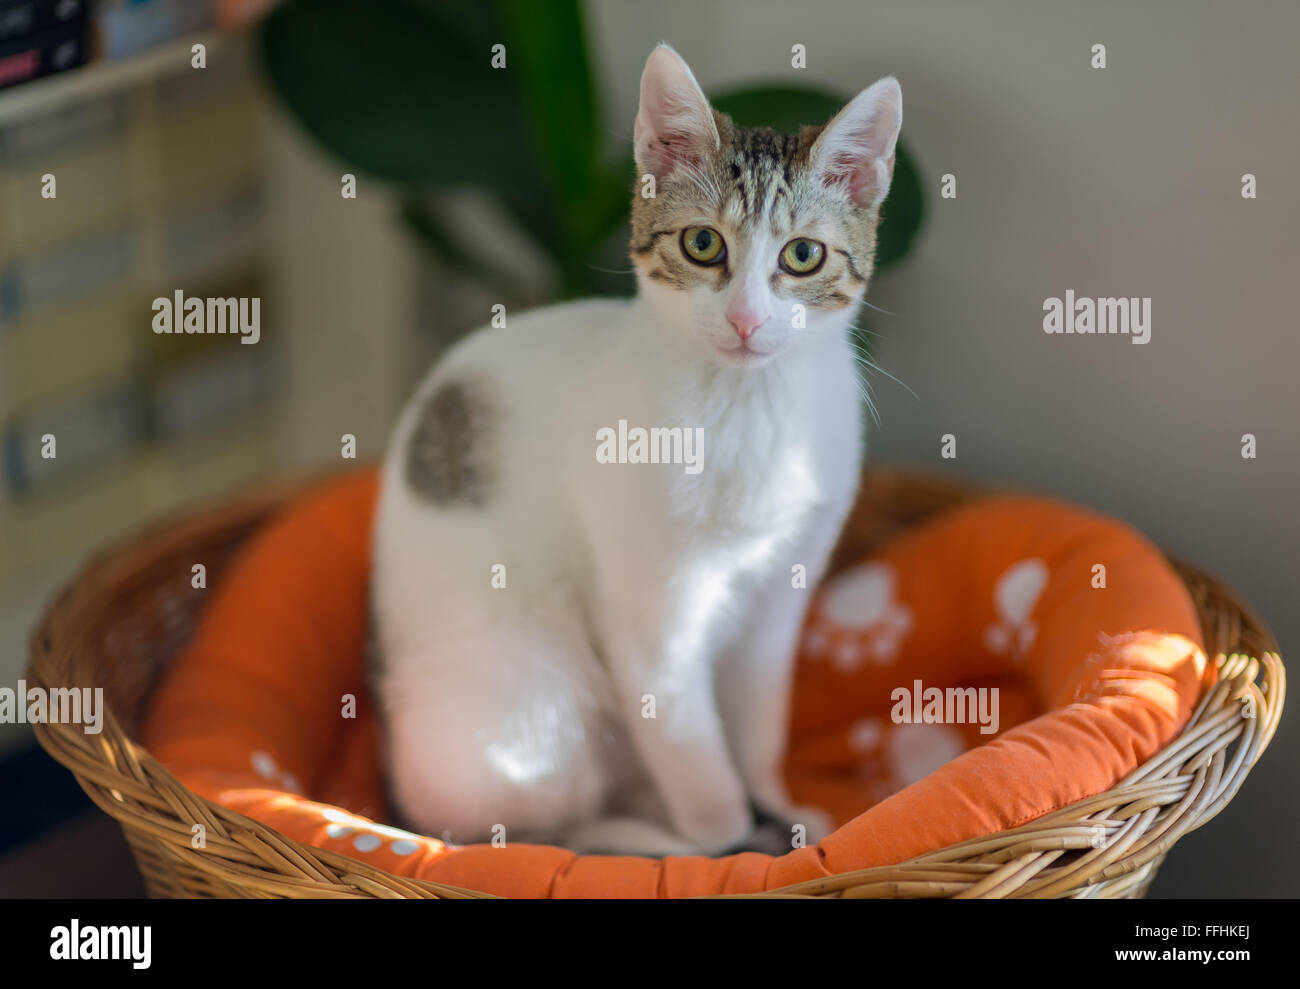 Europäische Kätzchen im Korb sitzen und starren Blick Stockfoto